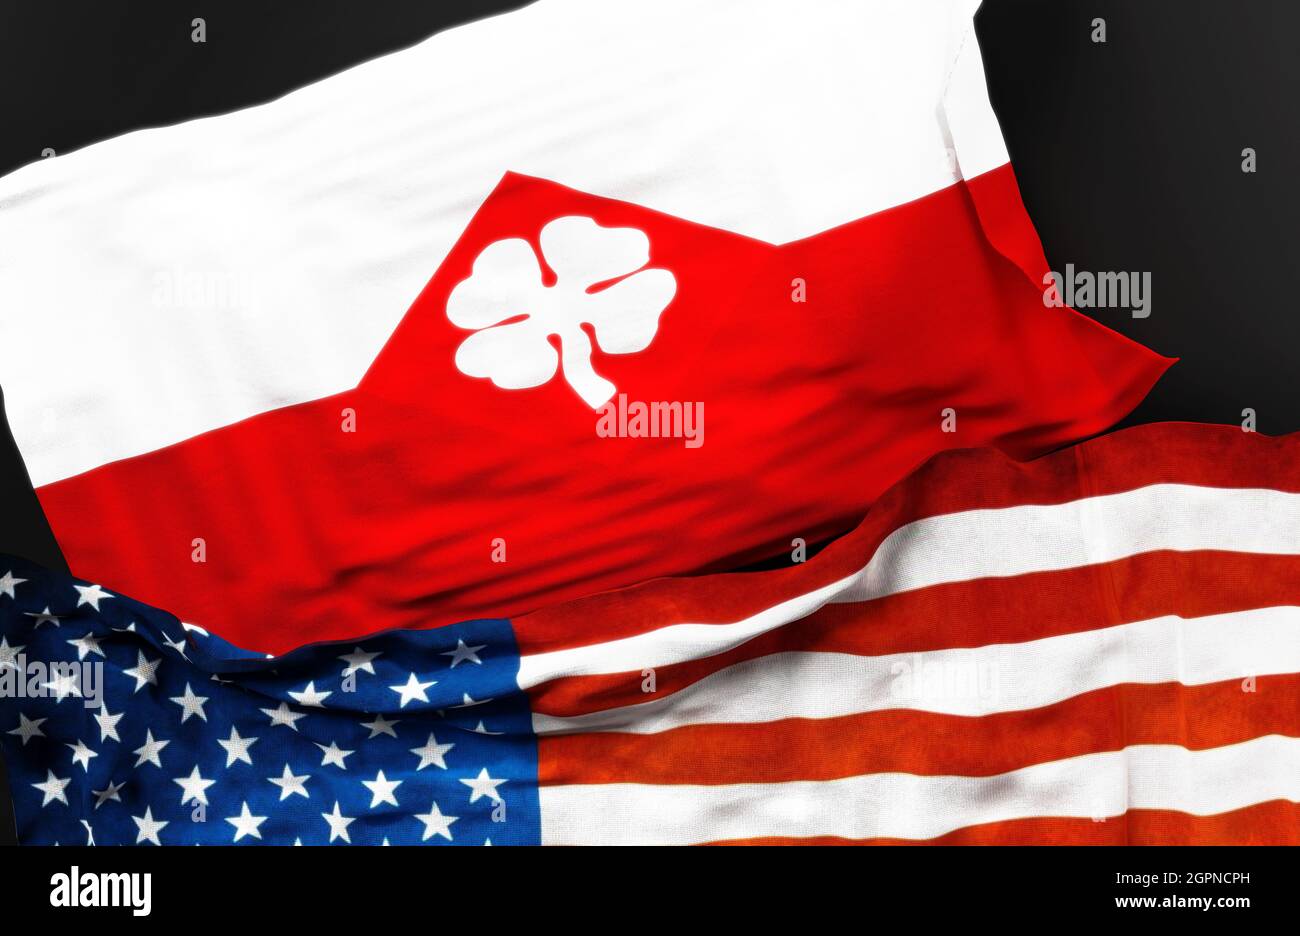 Drapeau de la quatrième armée des États-Unis avec un drapeau des États-Unis d'Amérique comme un symbole d'unité entre eux, illustration 3d Banque D'Images